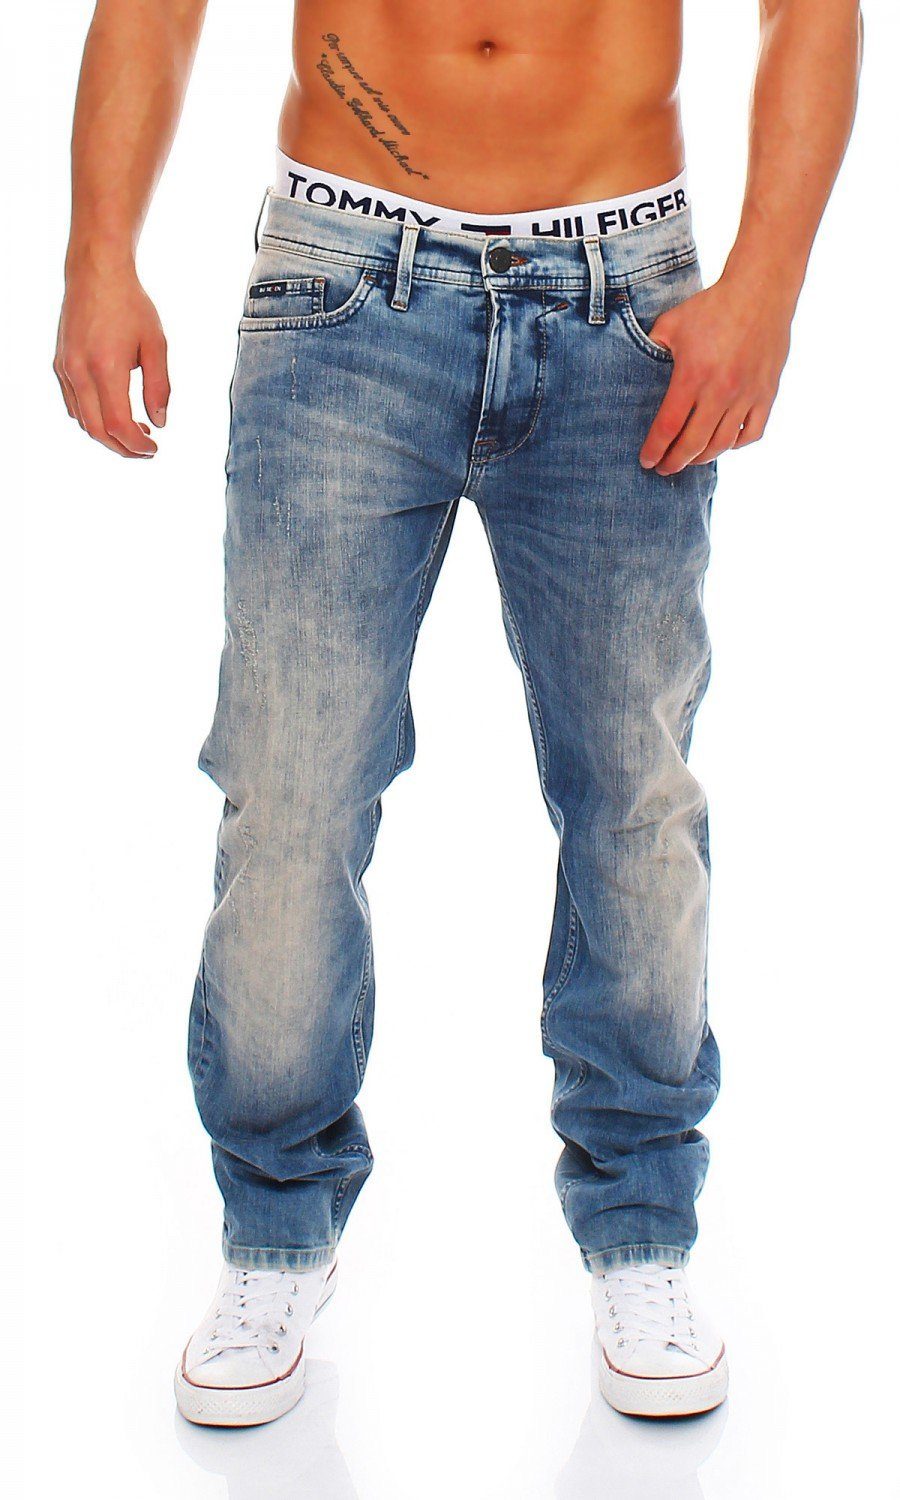 Ganz neu AUS! Big Seven Regular-fit-Jeans Morris Hose Seven Vintage Aged Herren Big Fit Jeans Regular